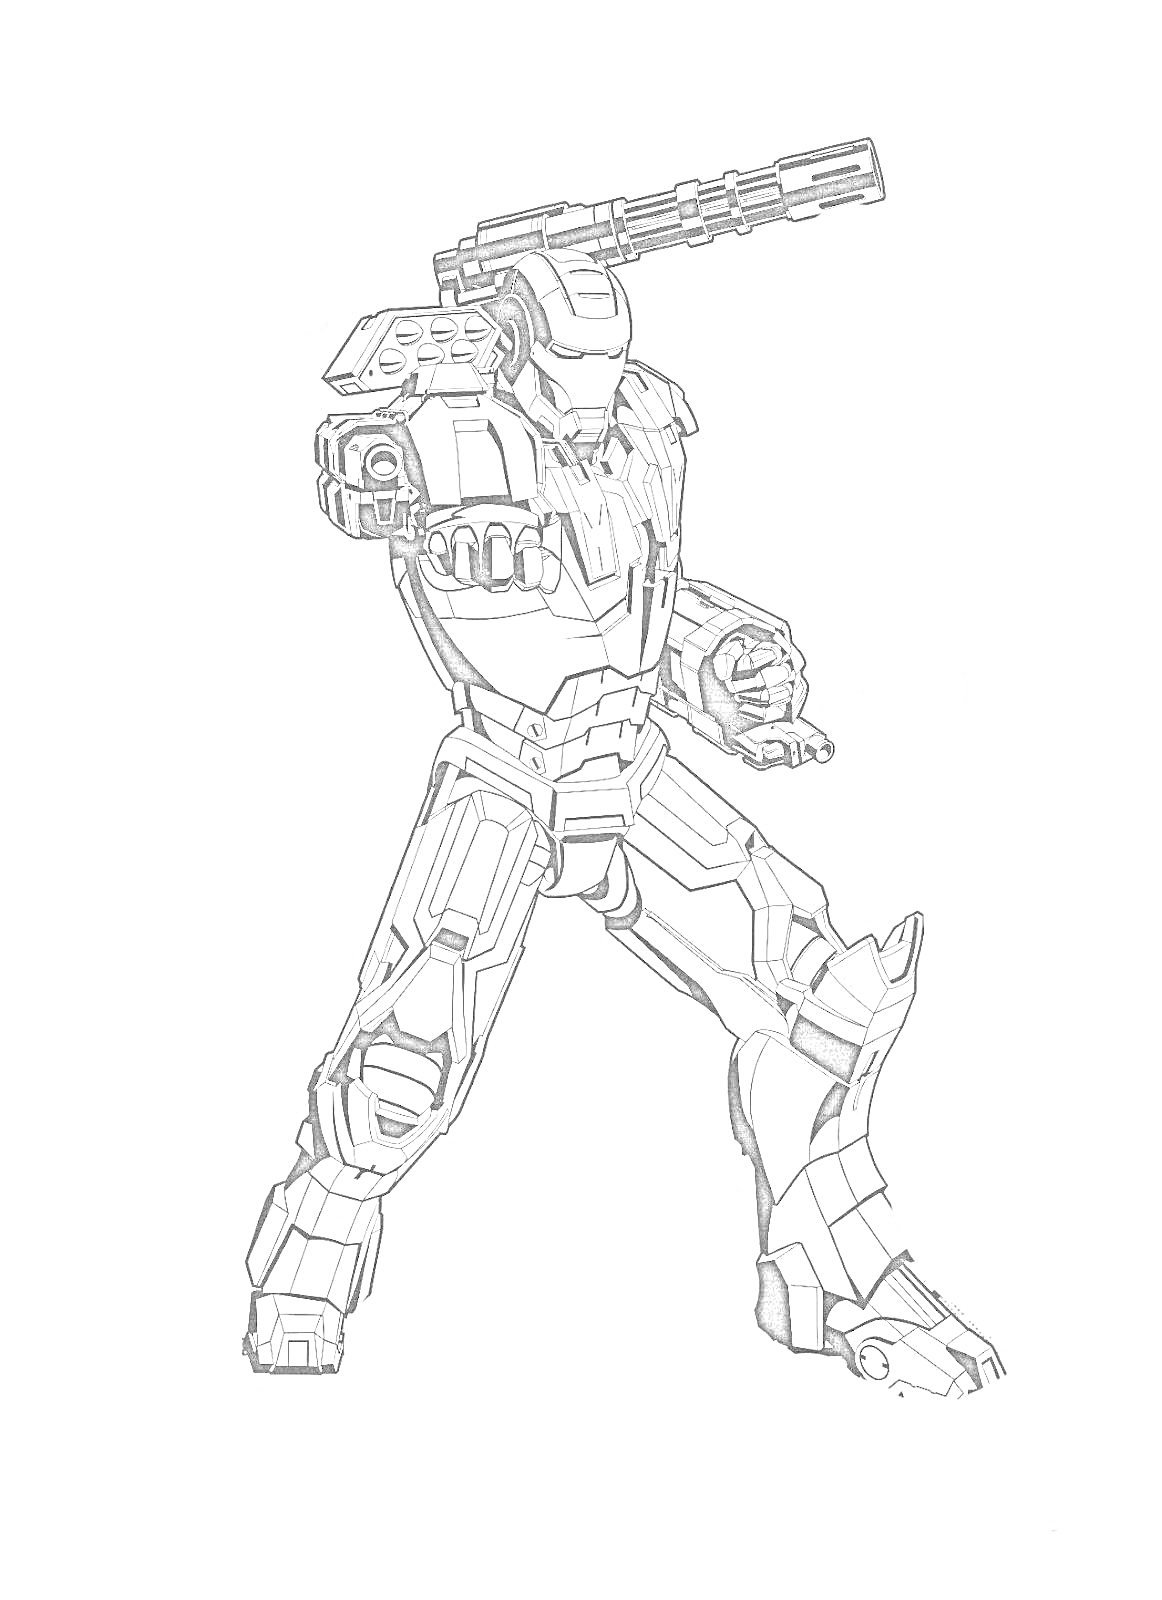 Раскраска Железный человек в полной боевой броне с пушкой на плече